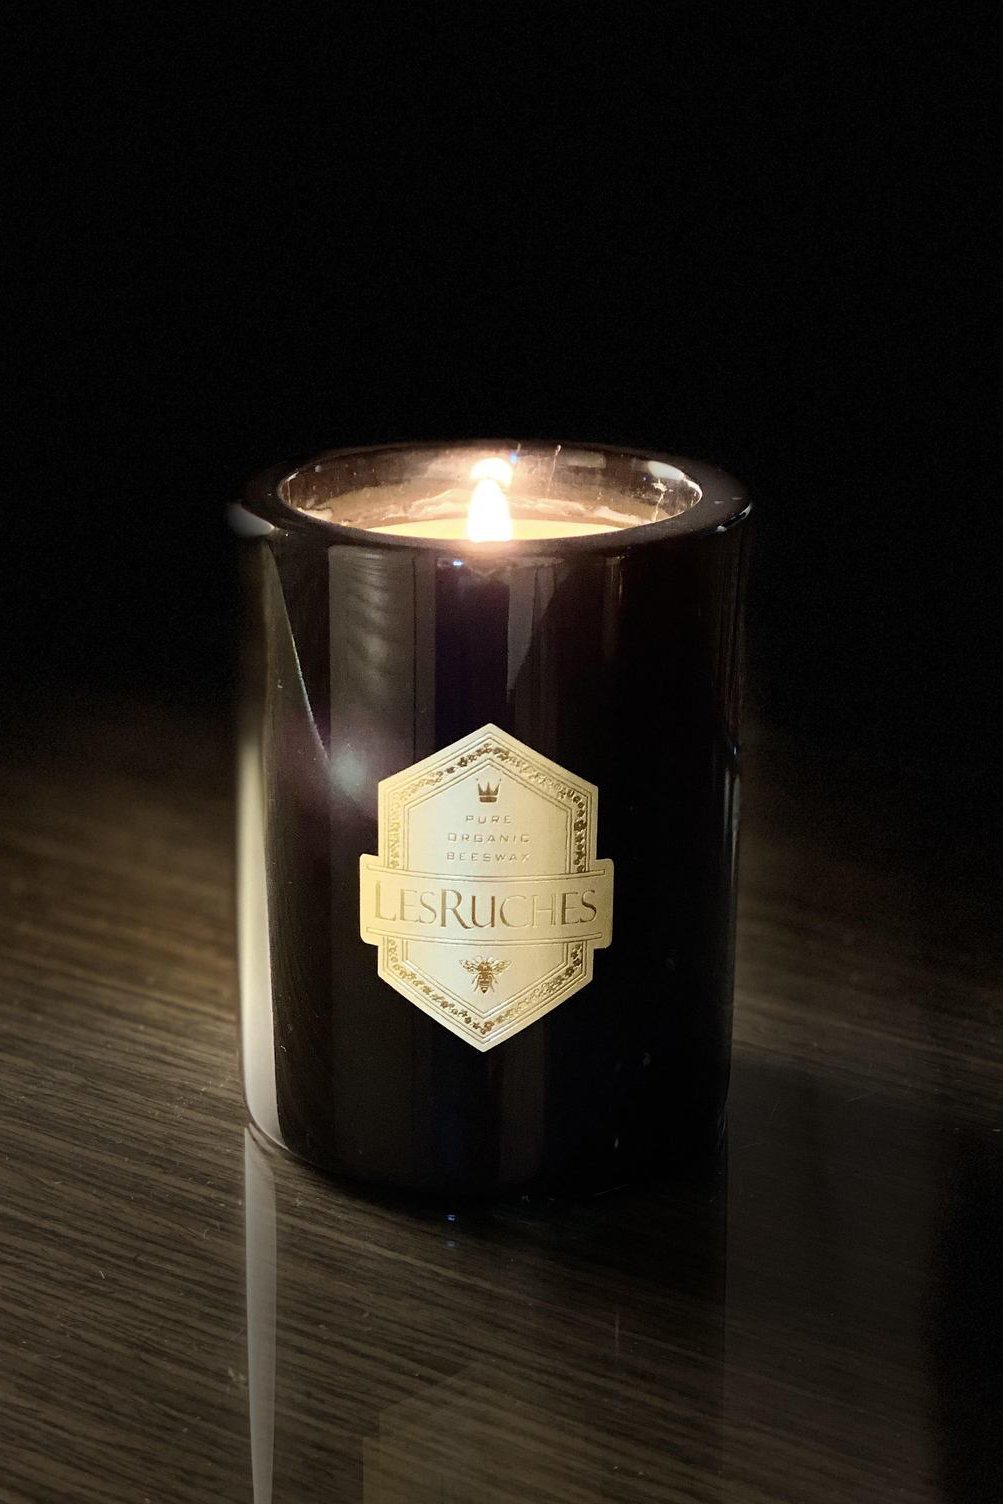 Le Tabac Noir Marbre Partfaite Beeswax Candle 8 oz. - L'Atelier Global